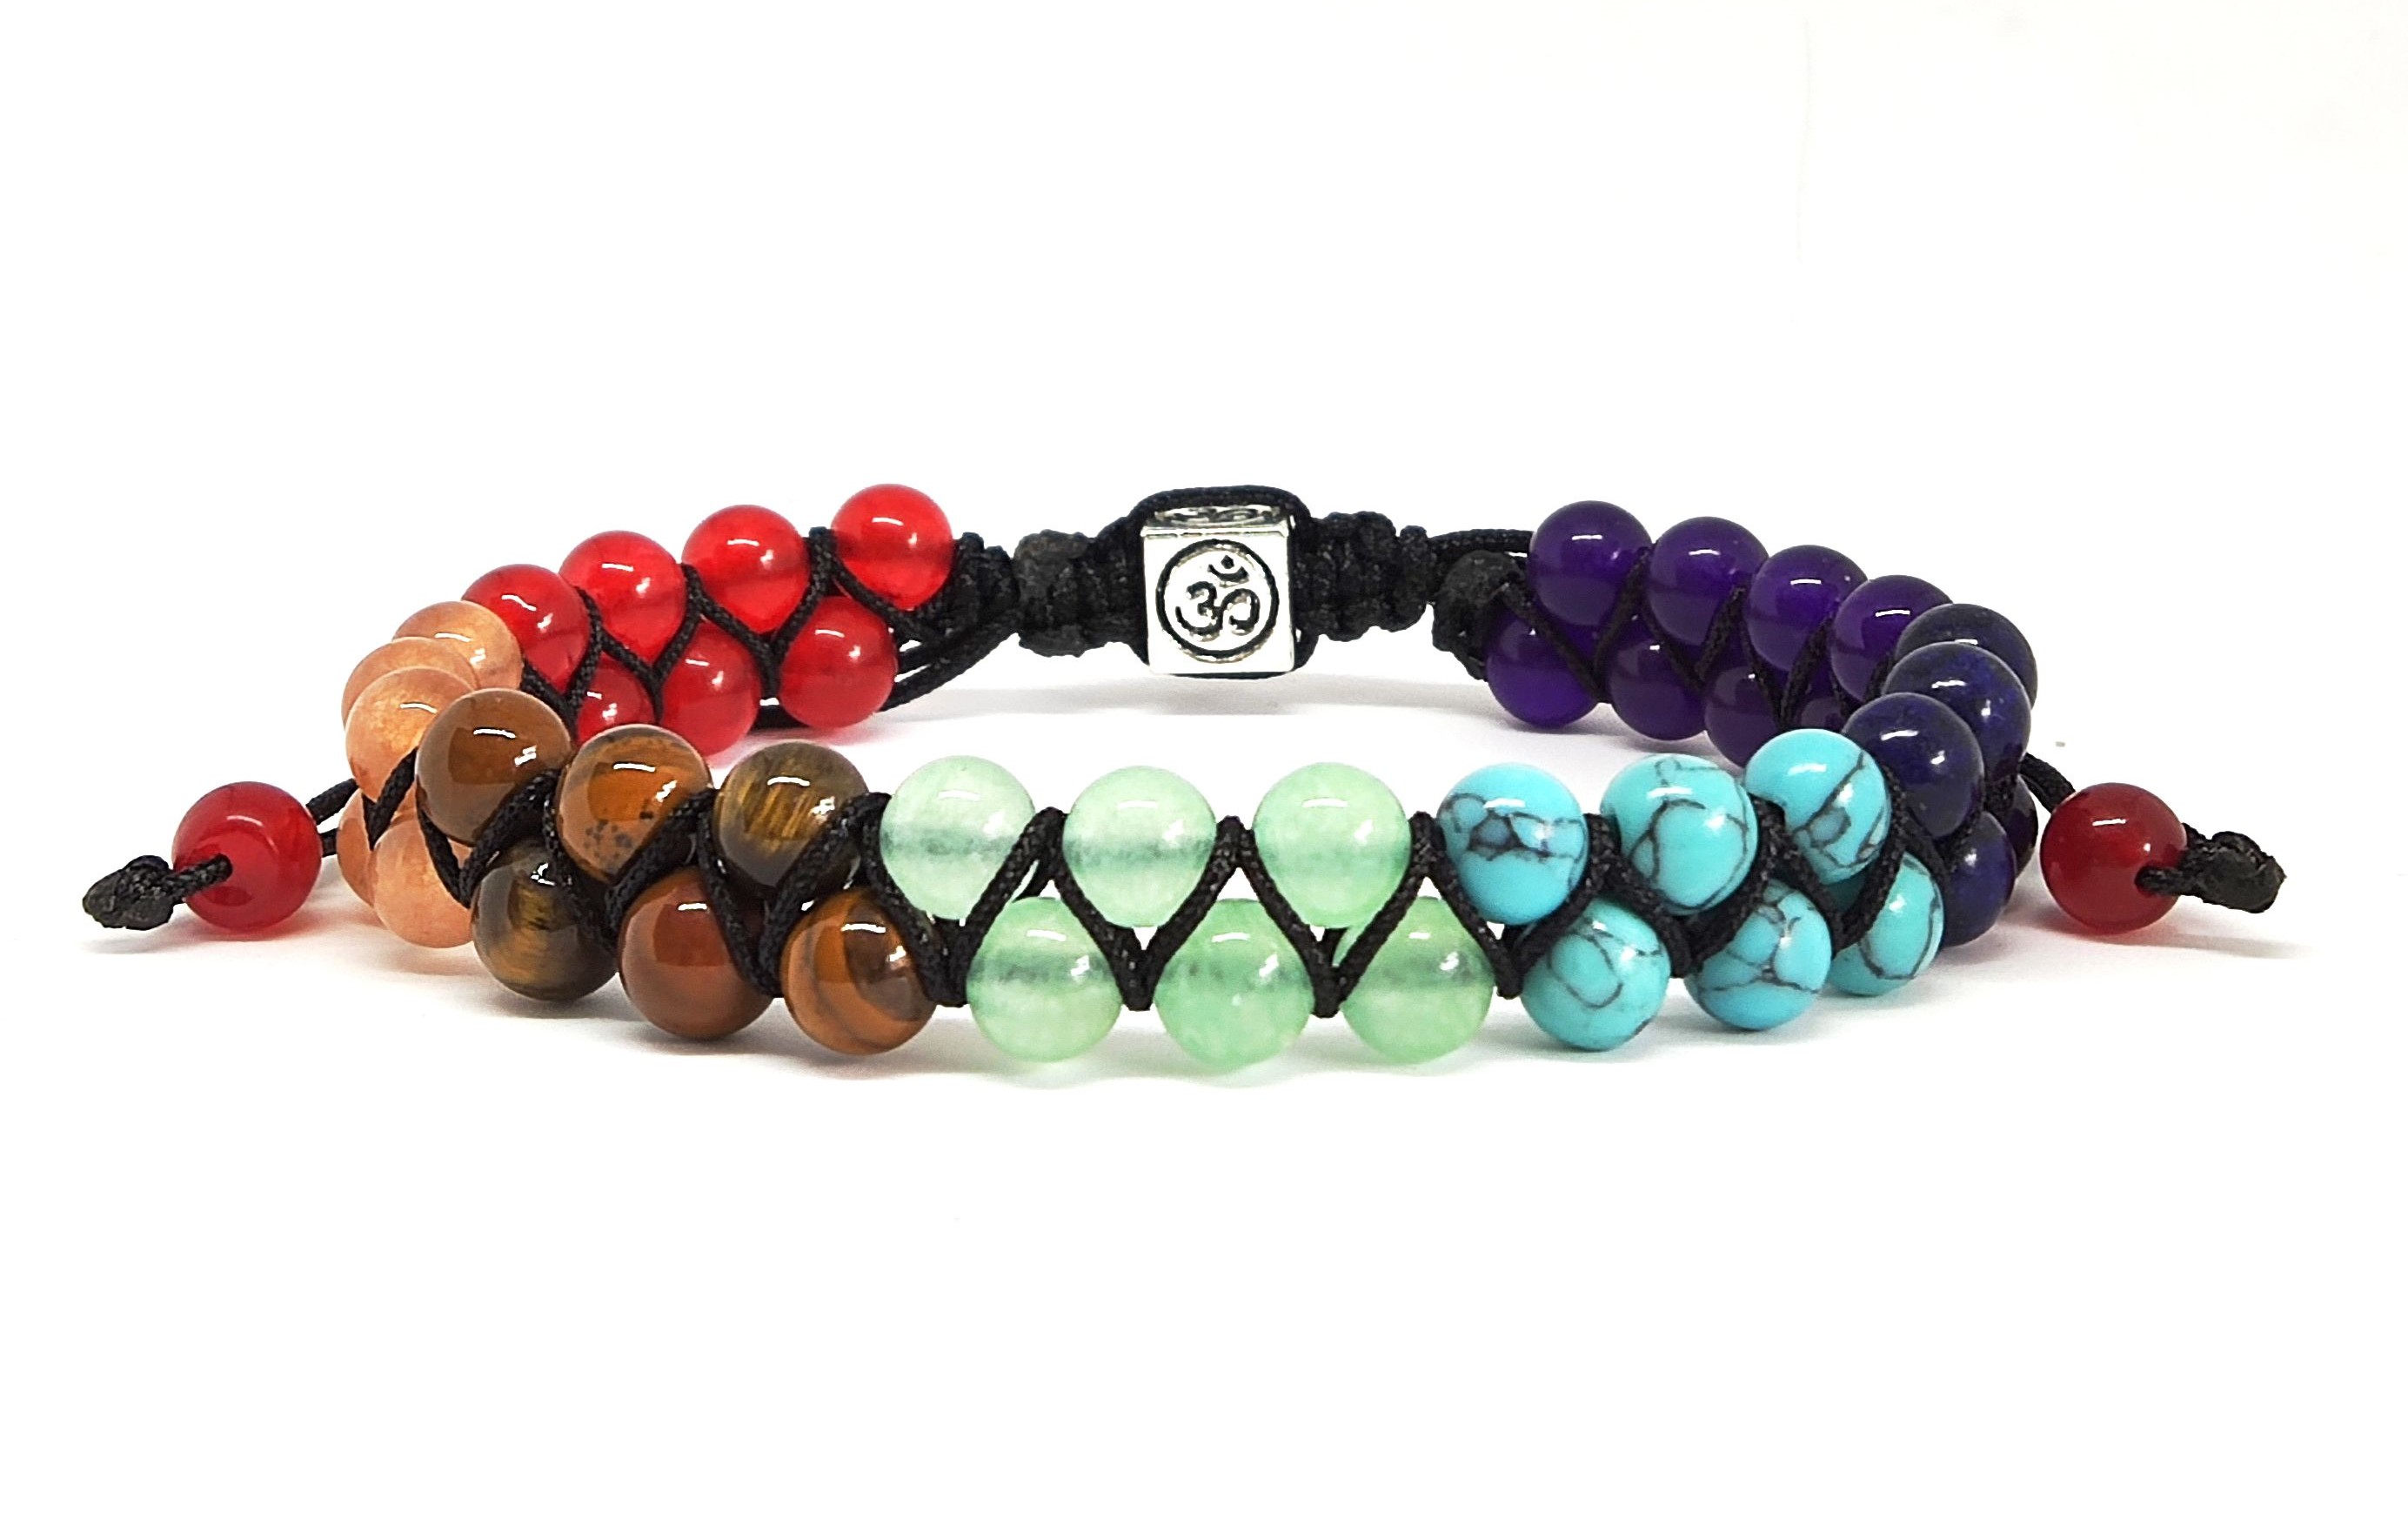 A multicoloured chakra bracelet rests against a plain background